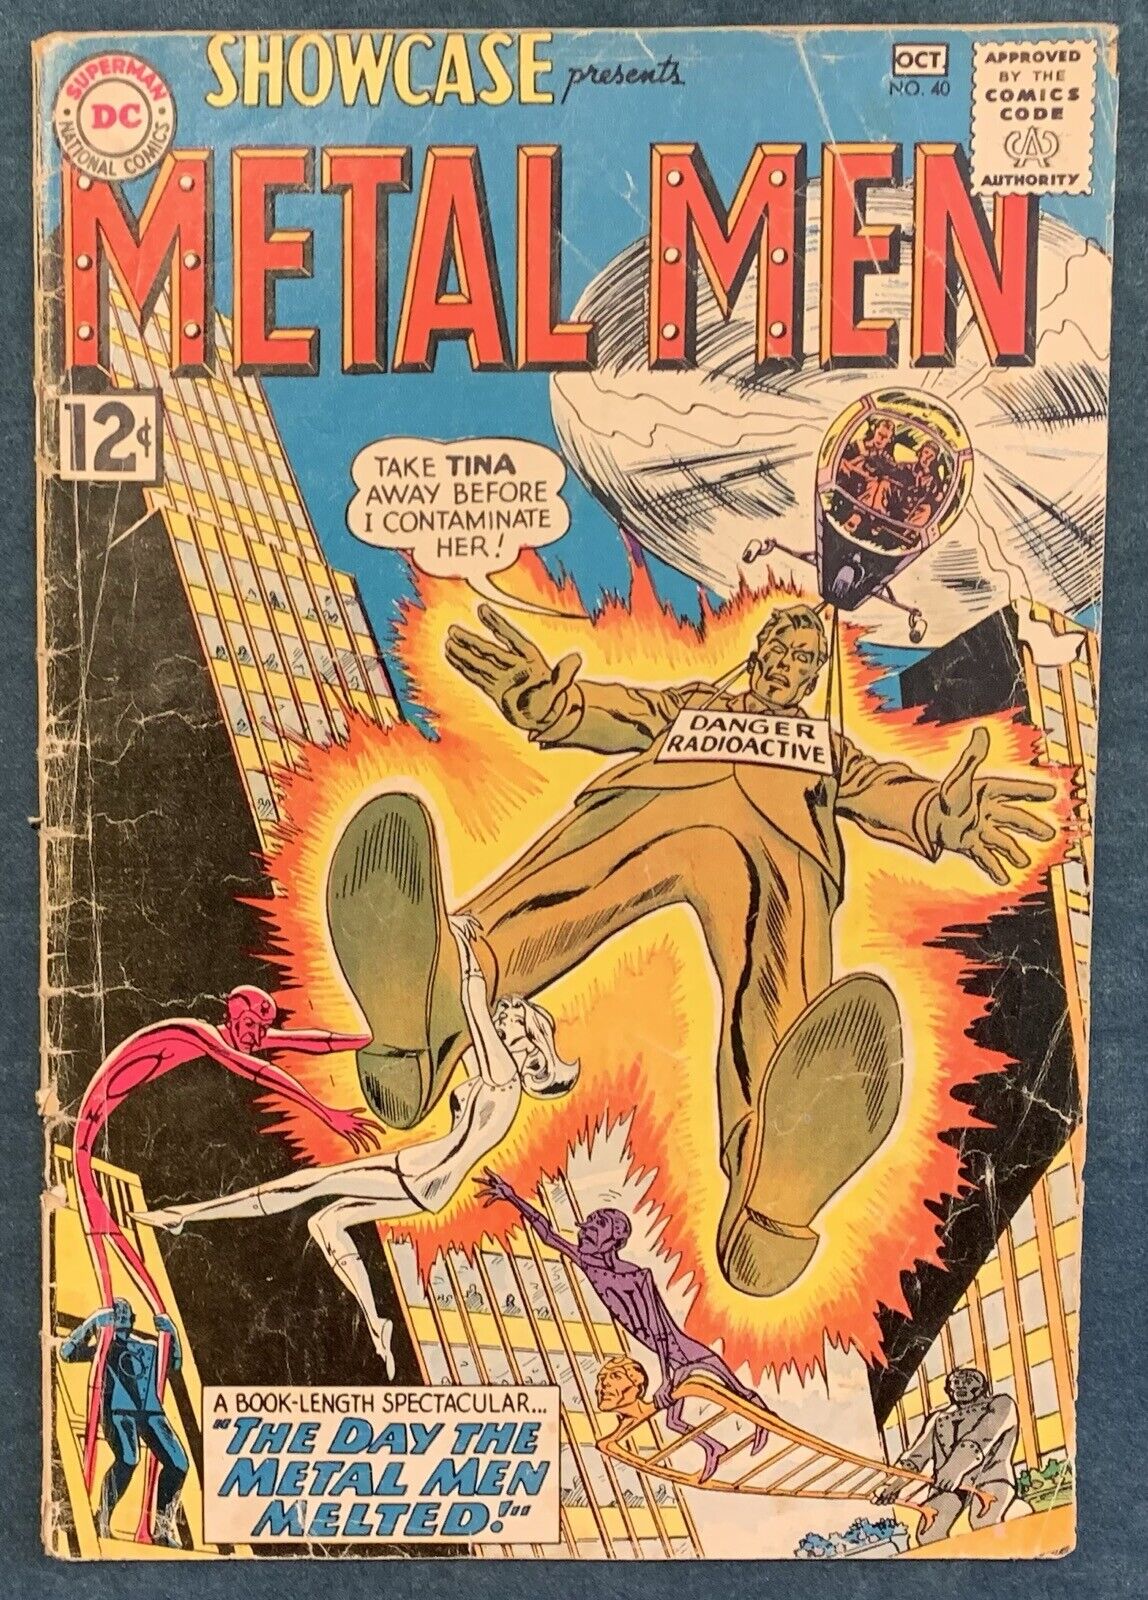 Showcase #40  Oct 1962   DC  Silver Age Metal Men